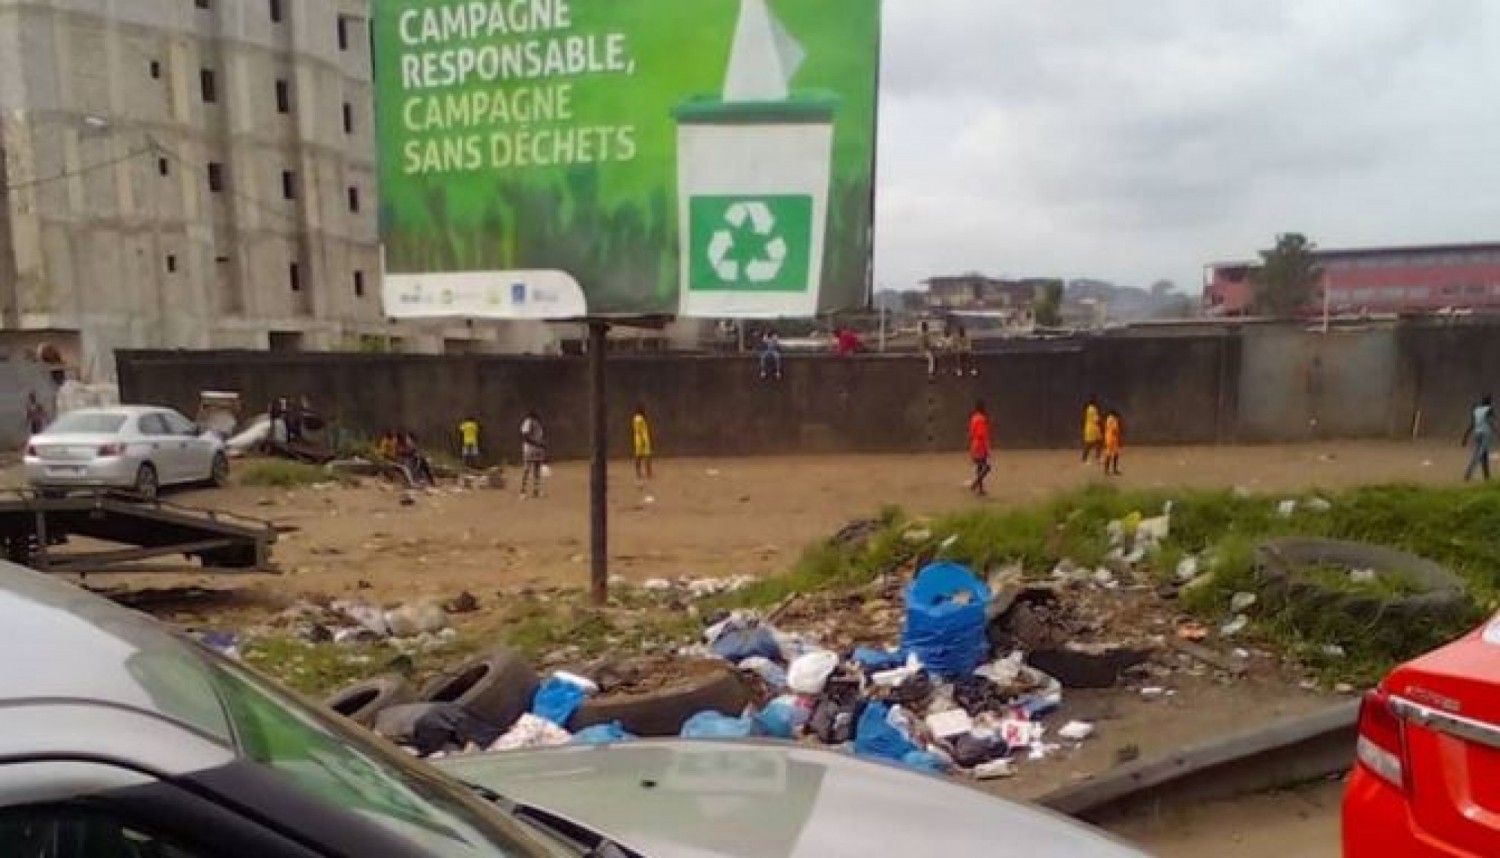 Côte d'Ivoire : Yopougon, quand les riverains défient la campagne de sensibilisation sans déchets de l'ANAGED